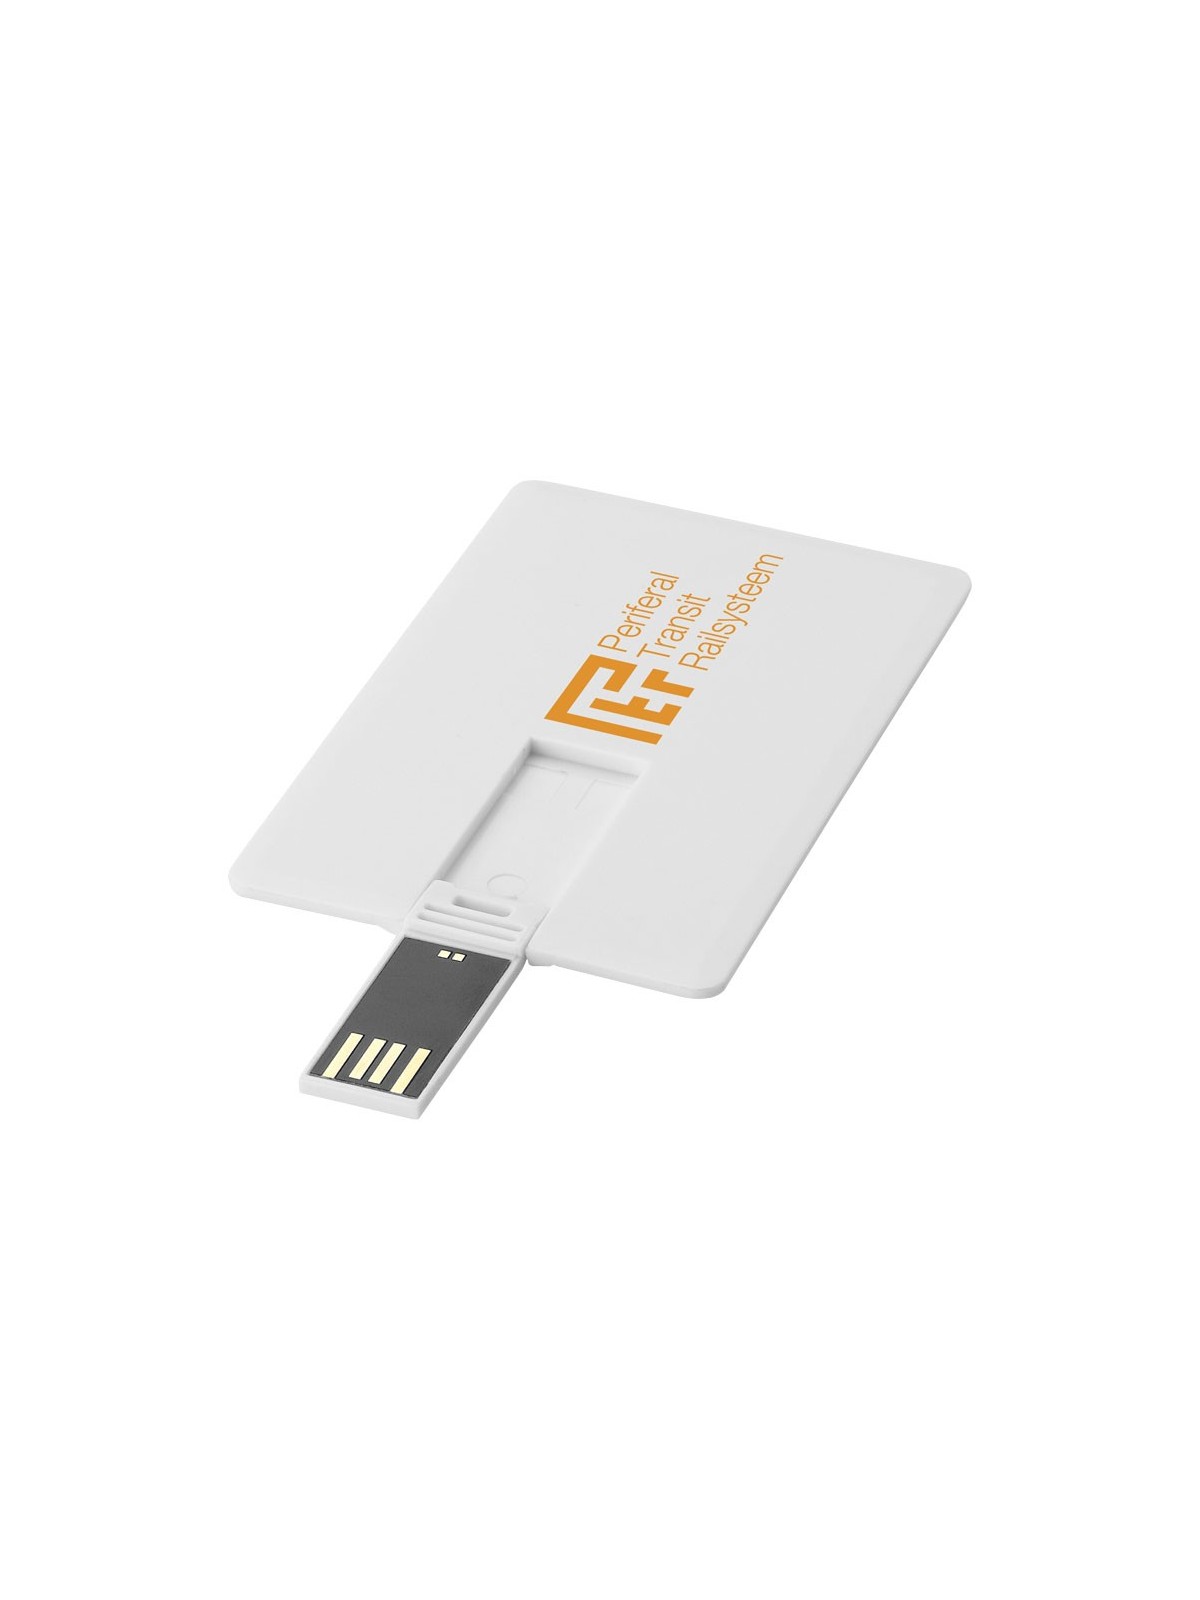 29-098 Clé USB 2.0 carte de crédit slim personnalisé